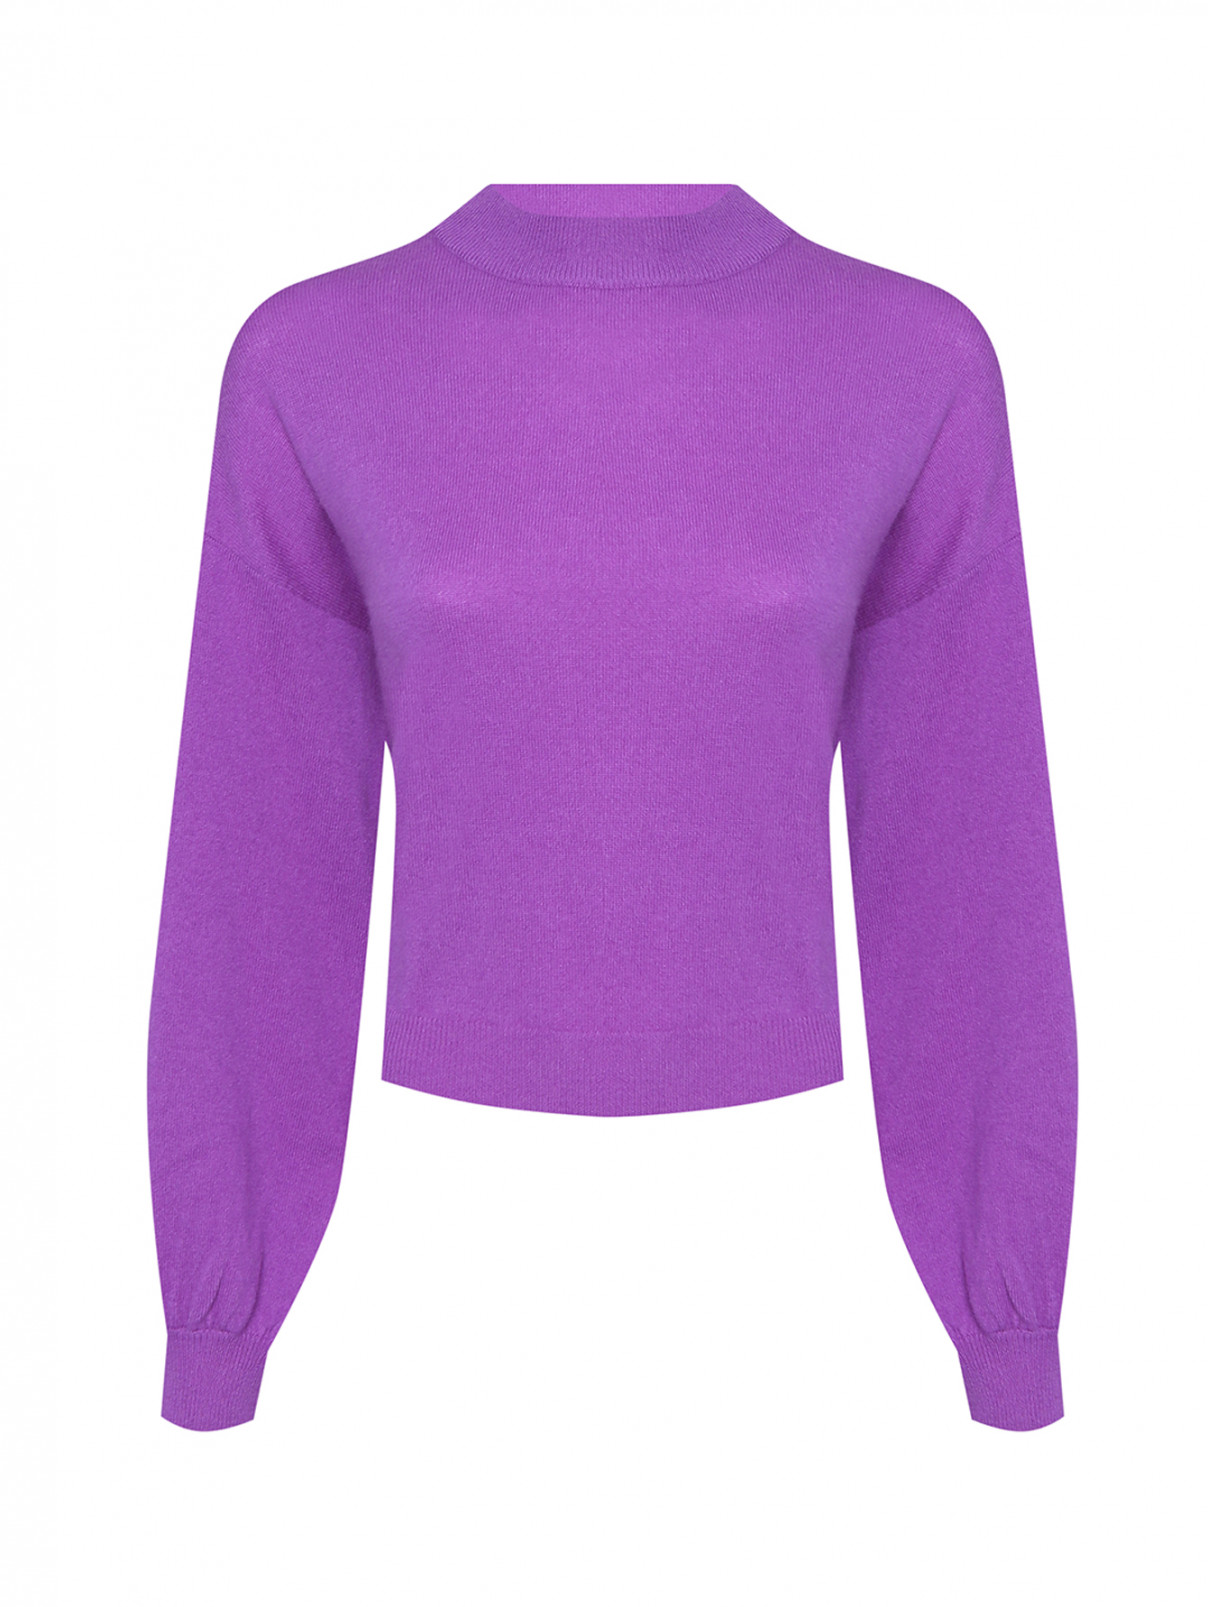 Однотонный джемпер из шерсти и кашемира Allude  –  Общий вид  – Цвет:  Фиолетовый